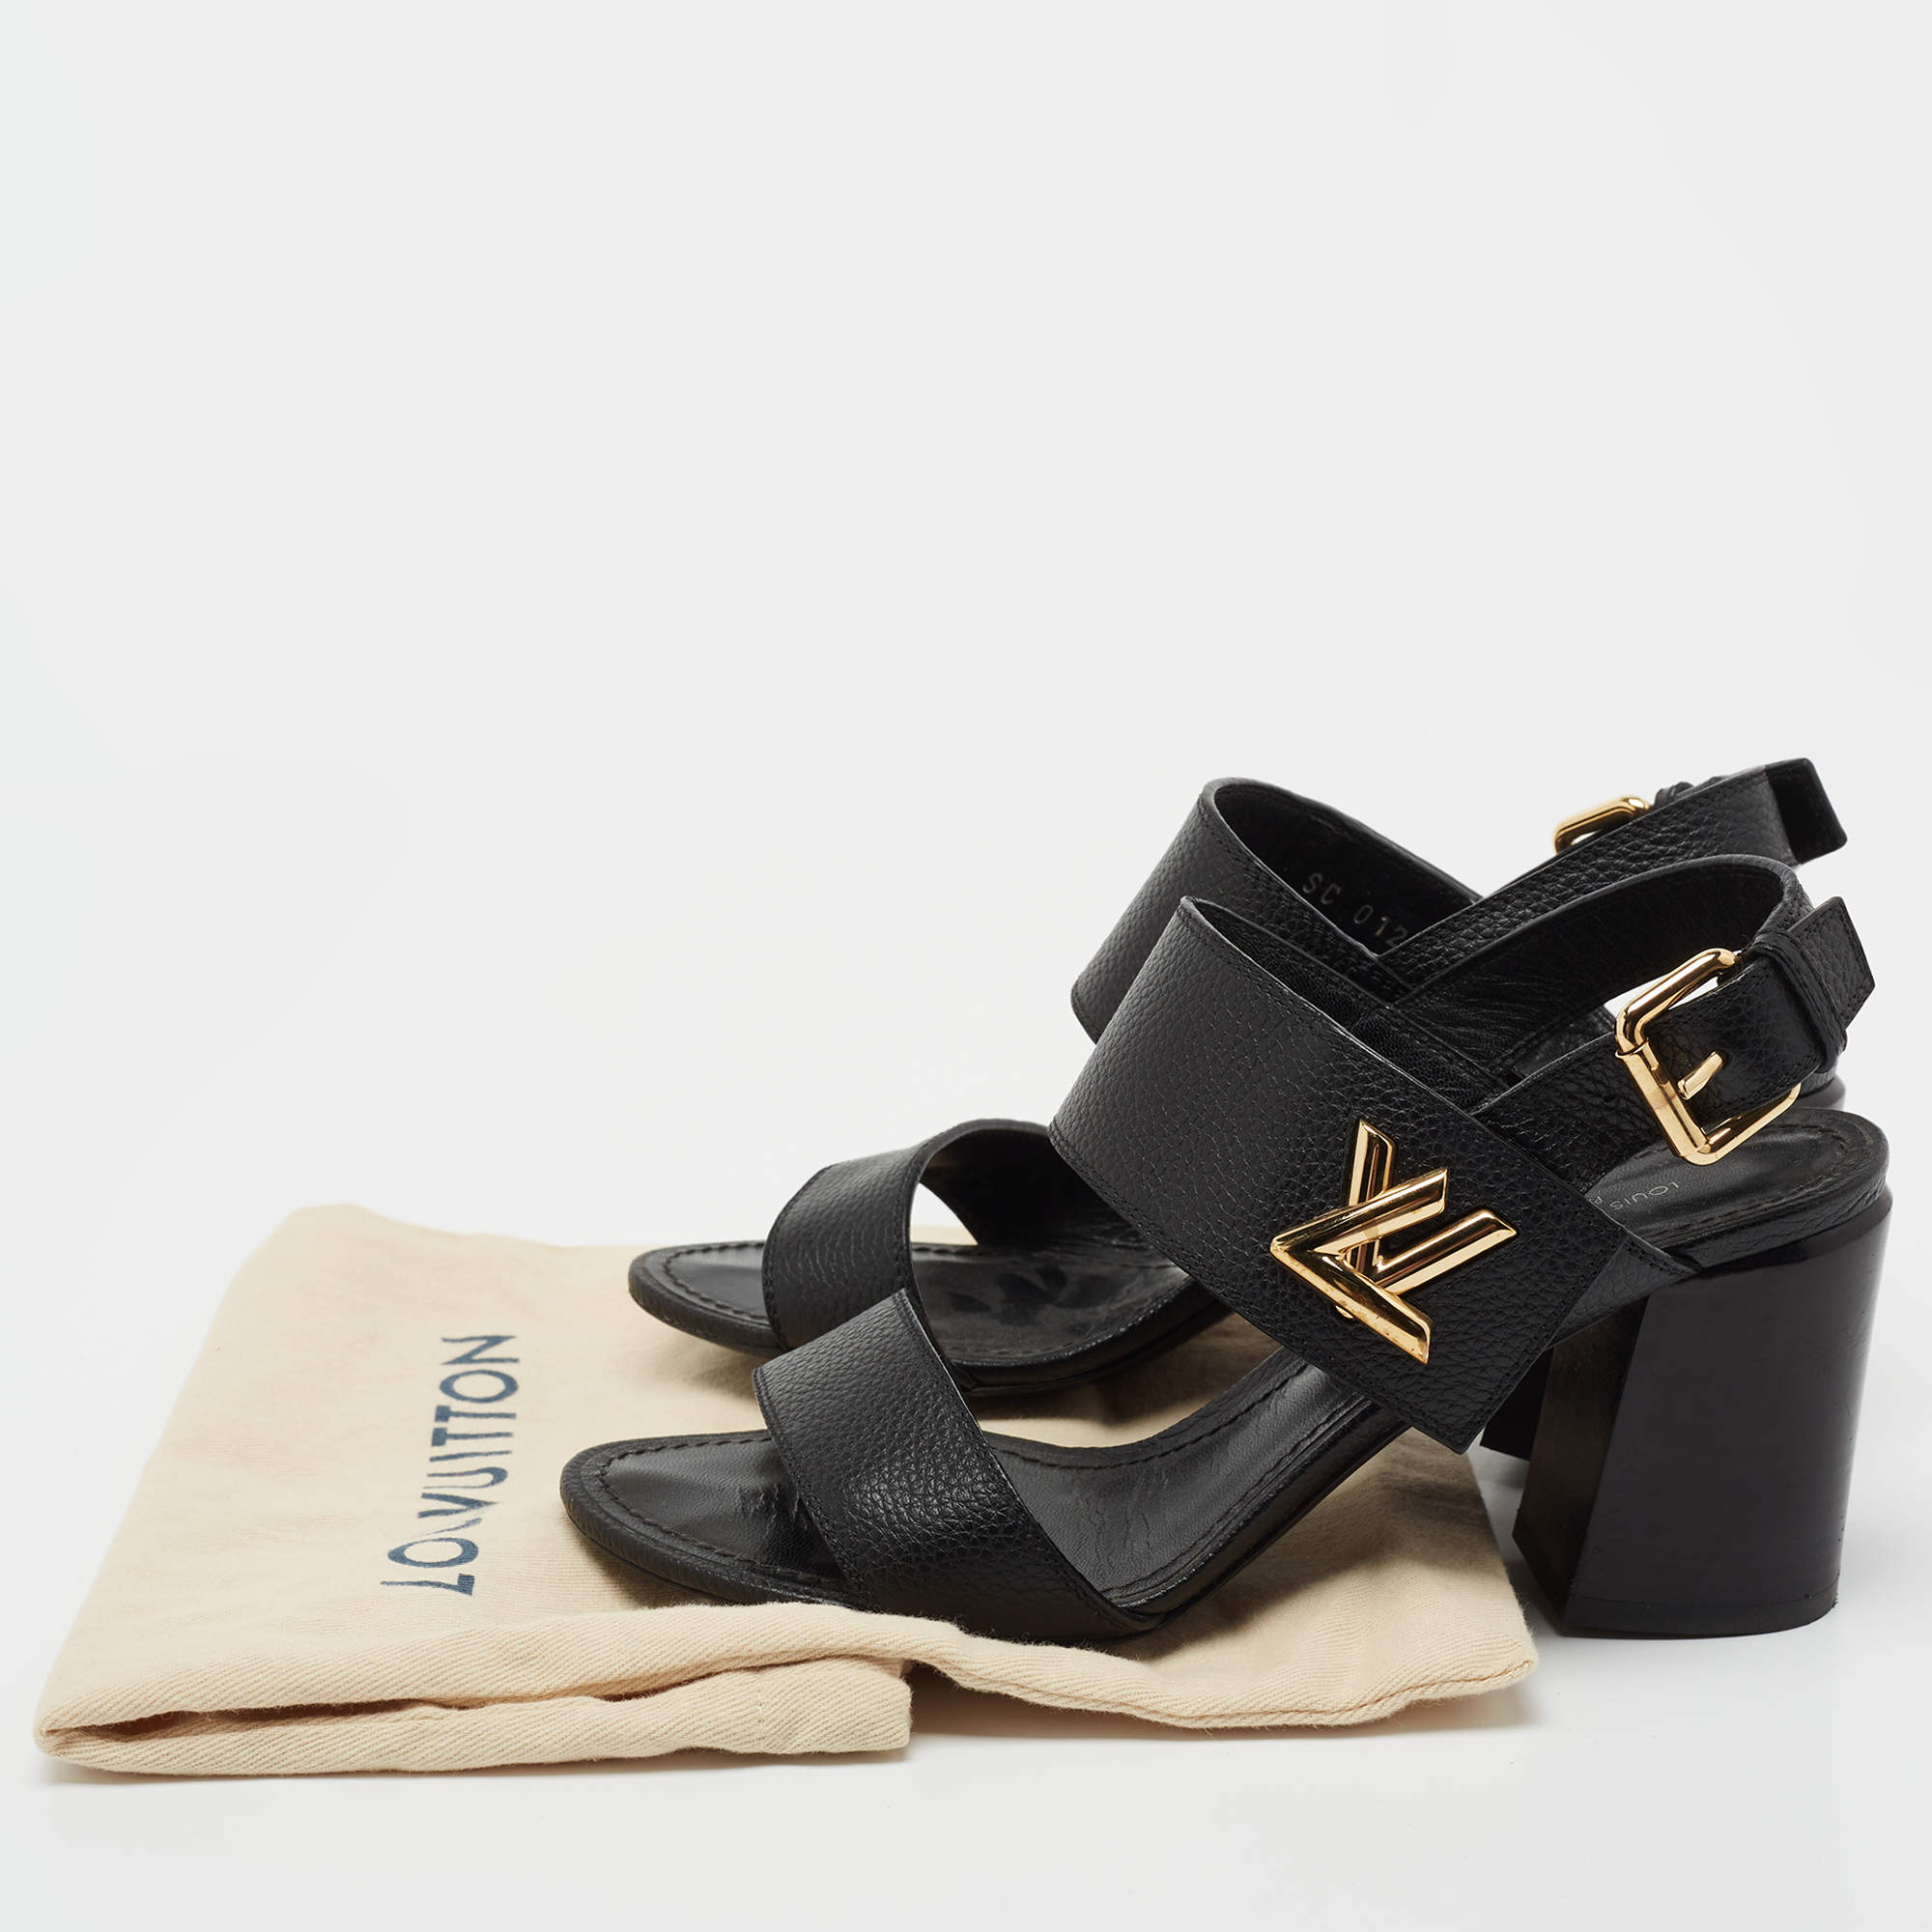 Louis Vuitton Black Leather Horizon Ankle Strap Sandals Size 36.5